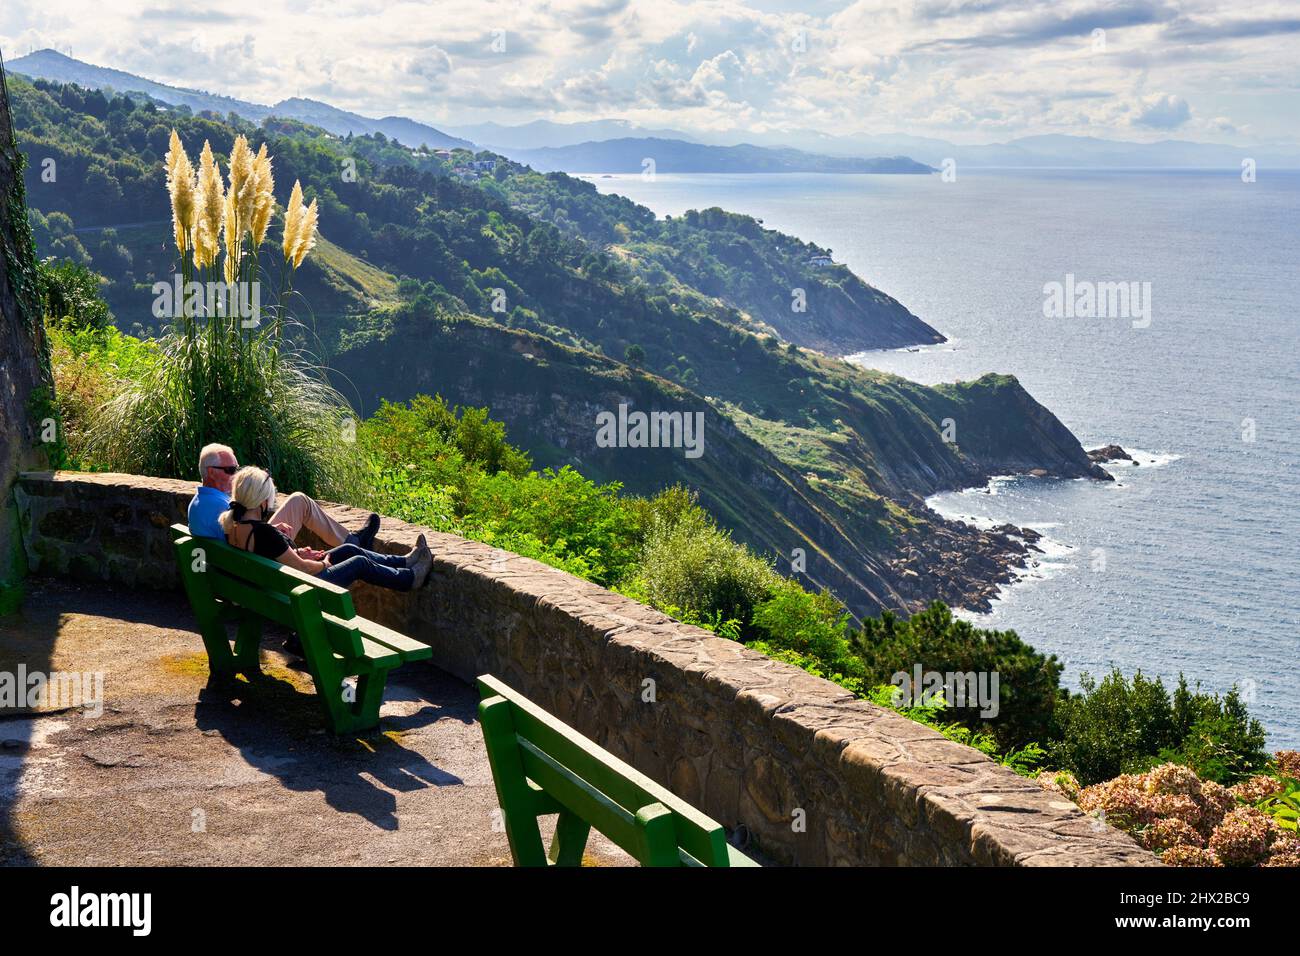 Coppia turistica godendo la costa basca ad un punto di vista del Monte Igeldo, Donostia, San Sebastian, città cosmopolita di 187.000 abitanti, noto per Foto Stock